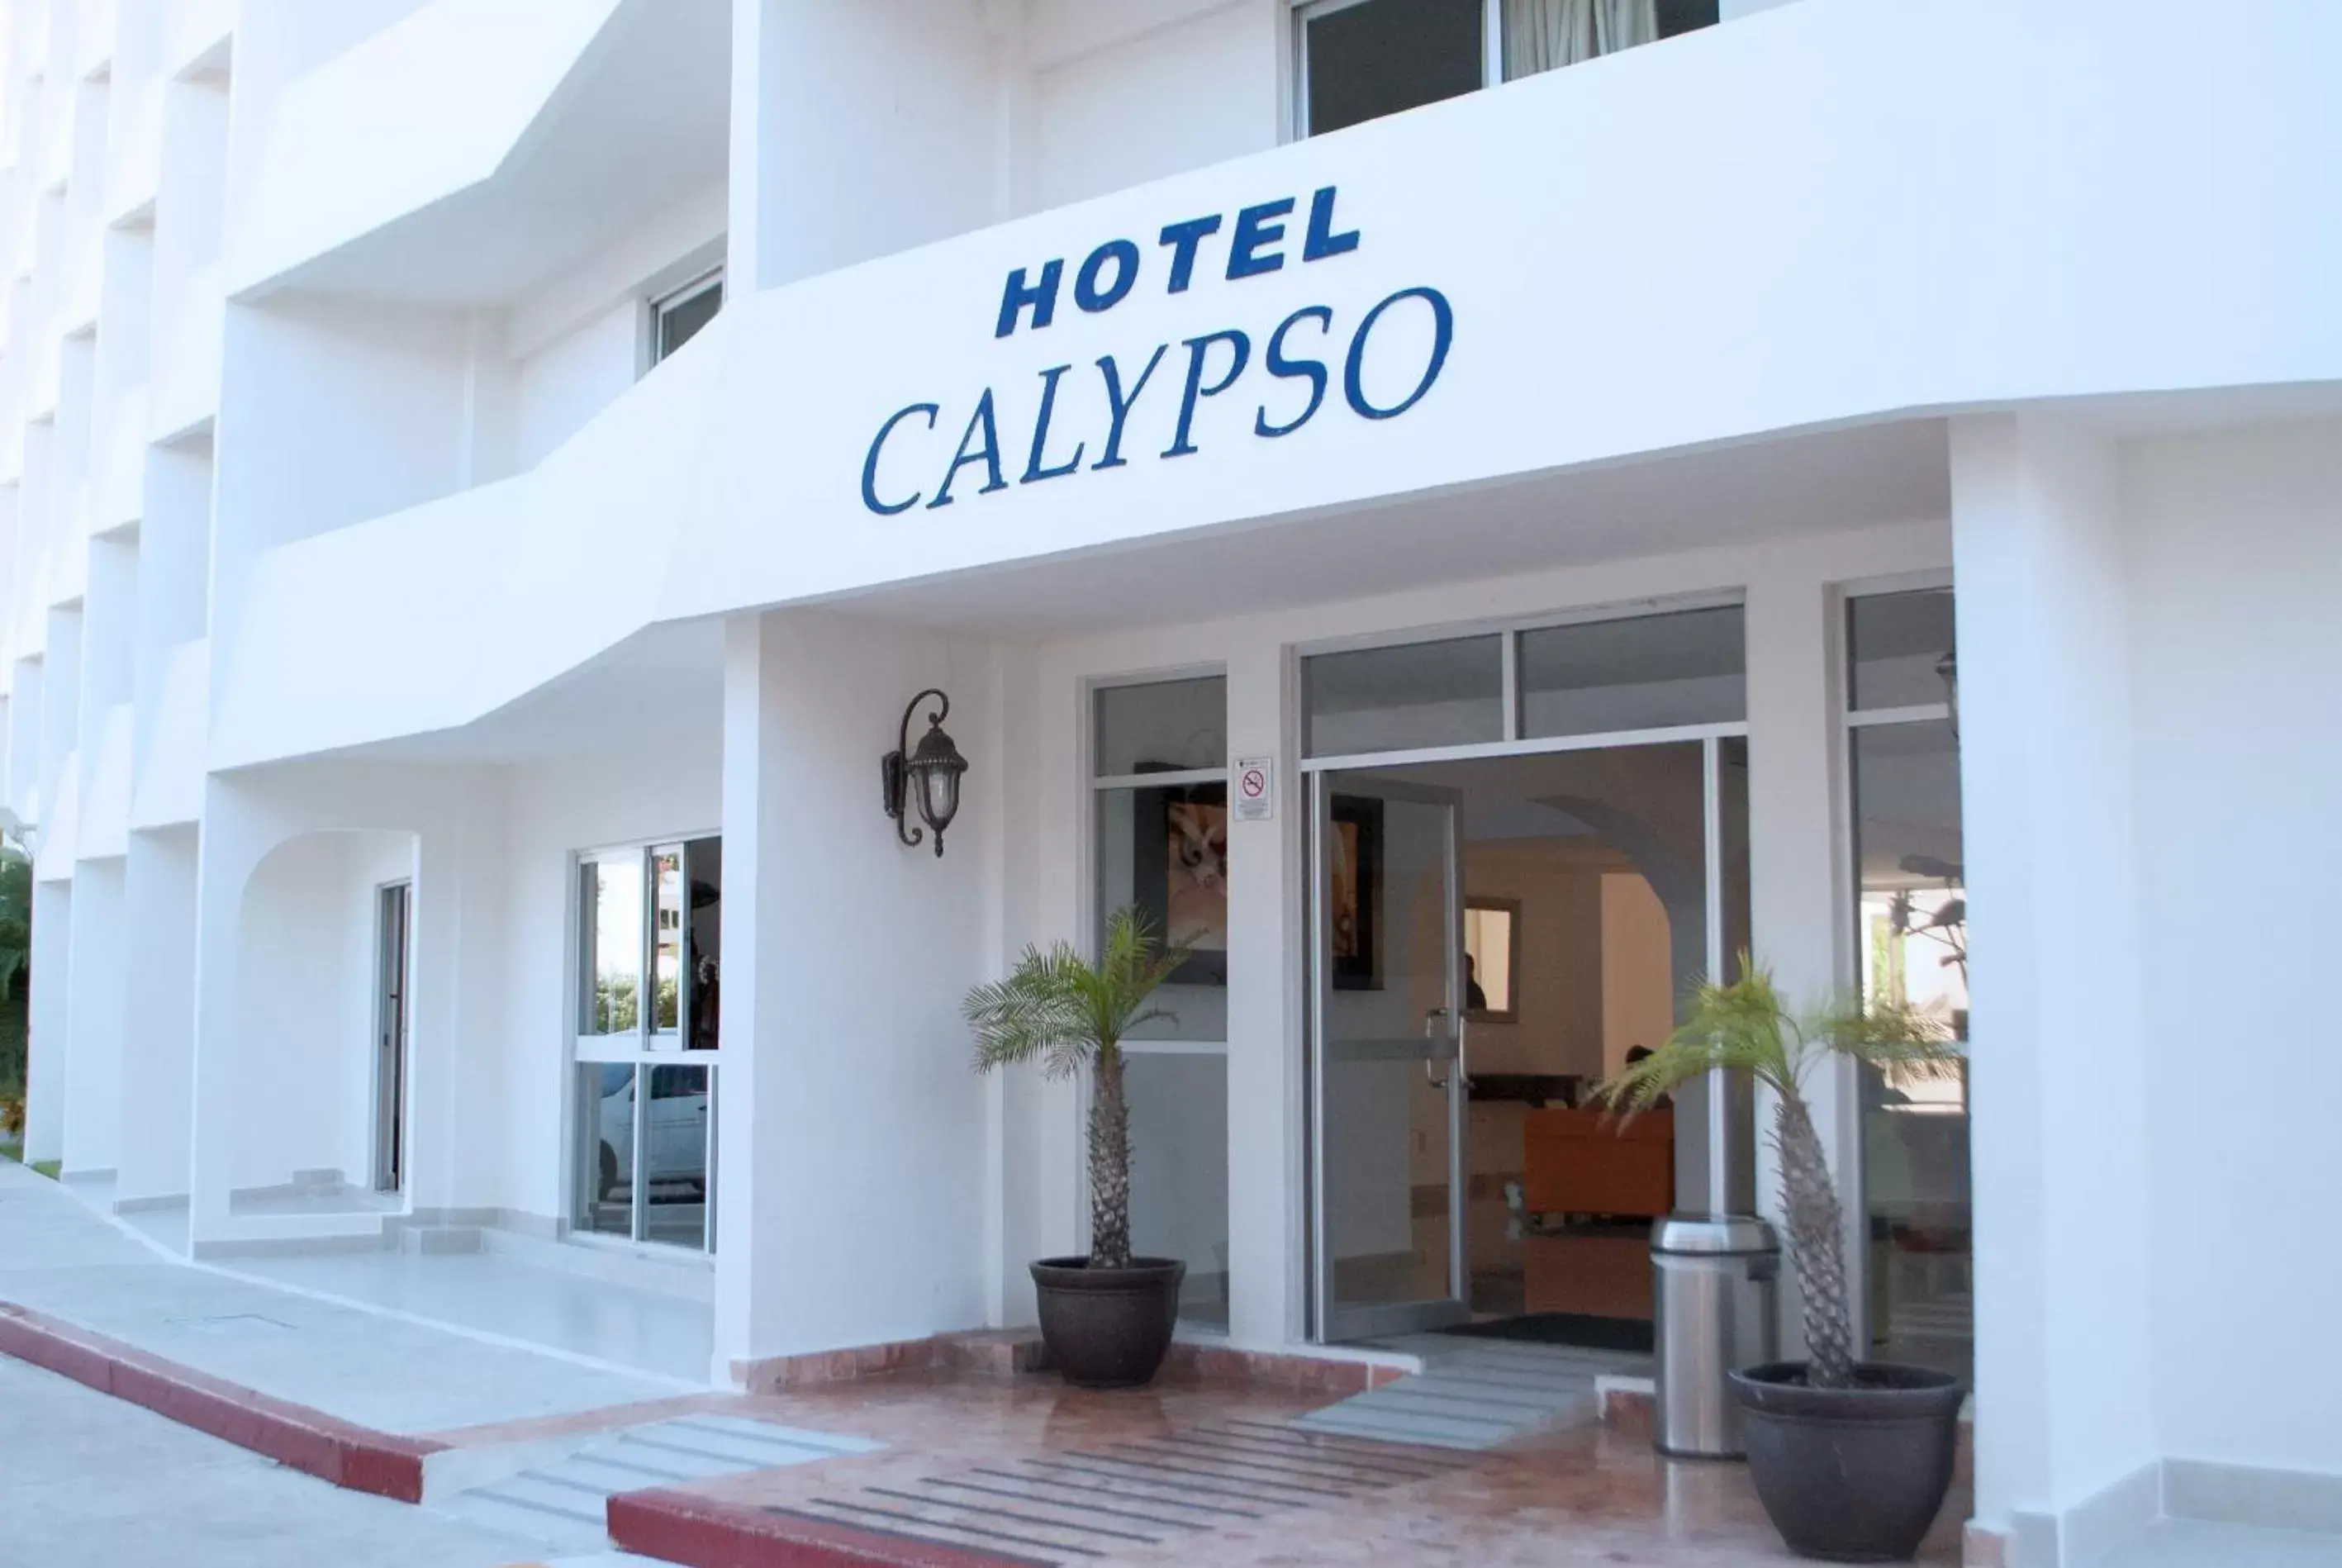 Off site in Hotel Calypso Cancun